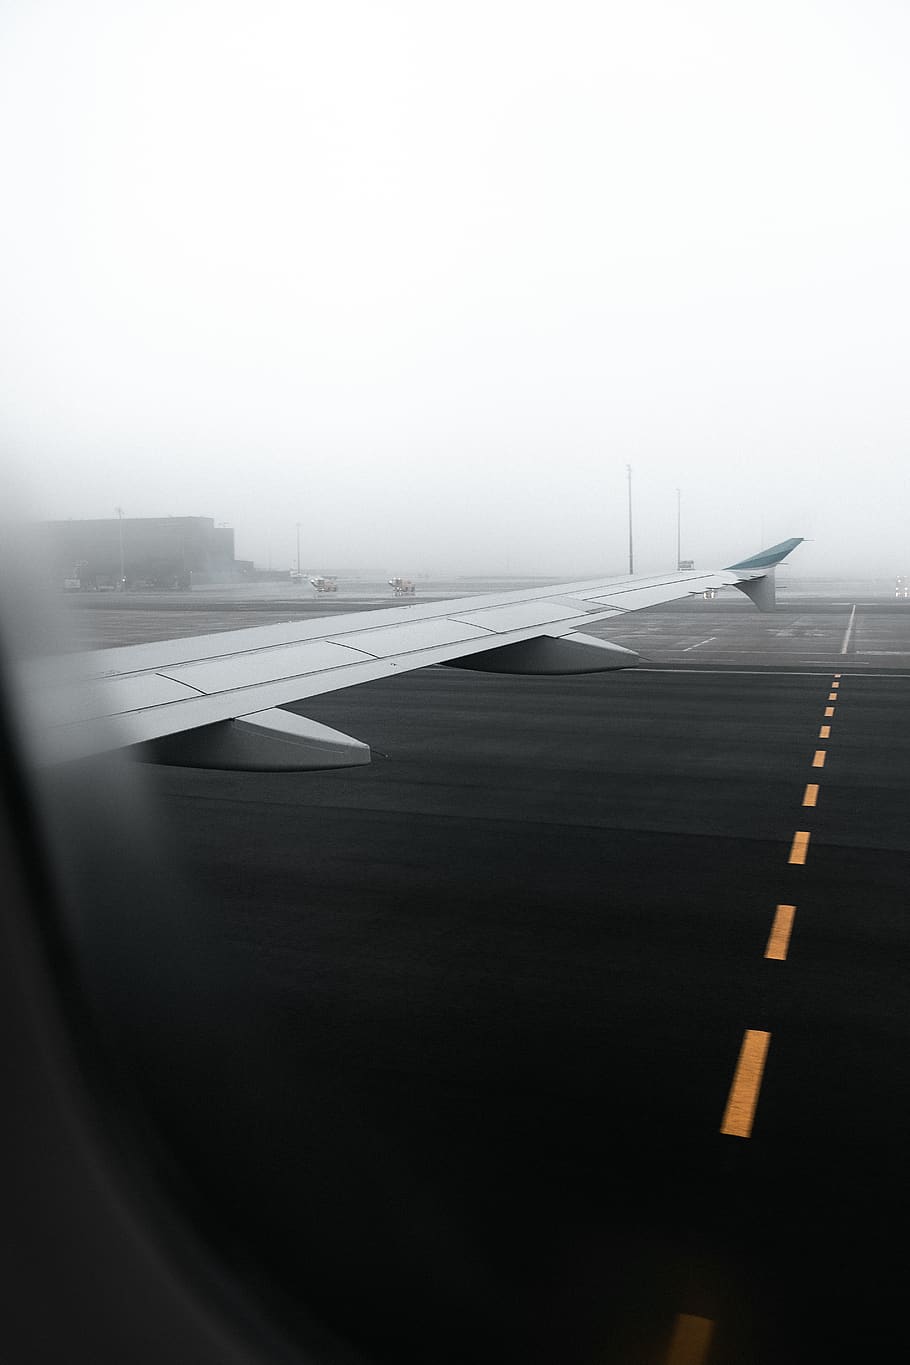 HD wallpaper: window plane on runway, transportation, airplane, mode of  transportation | Wallpaper Flare